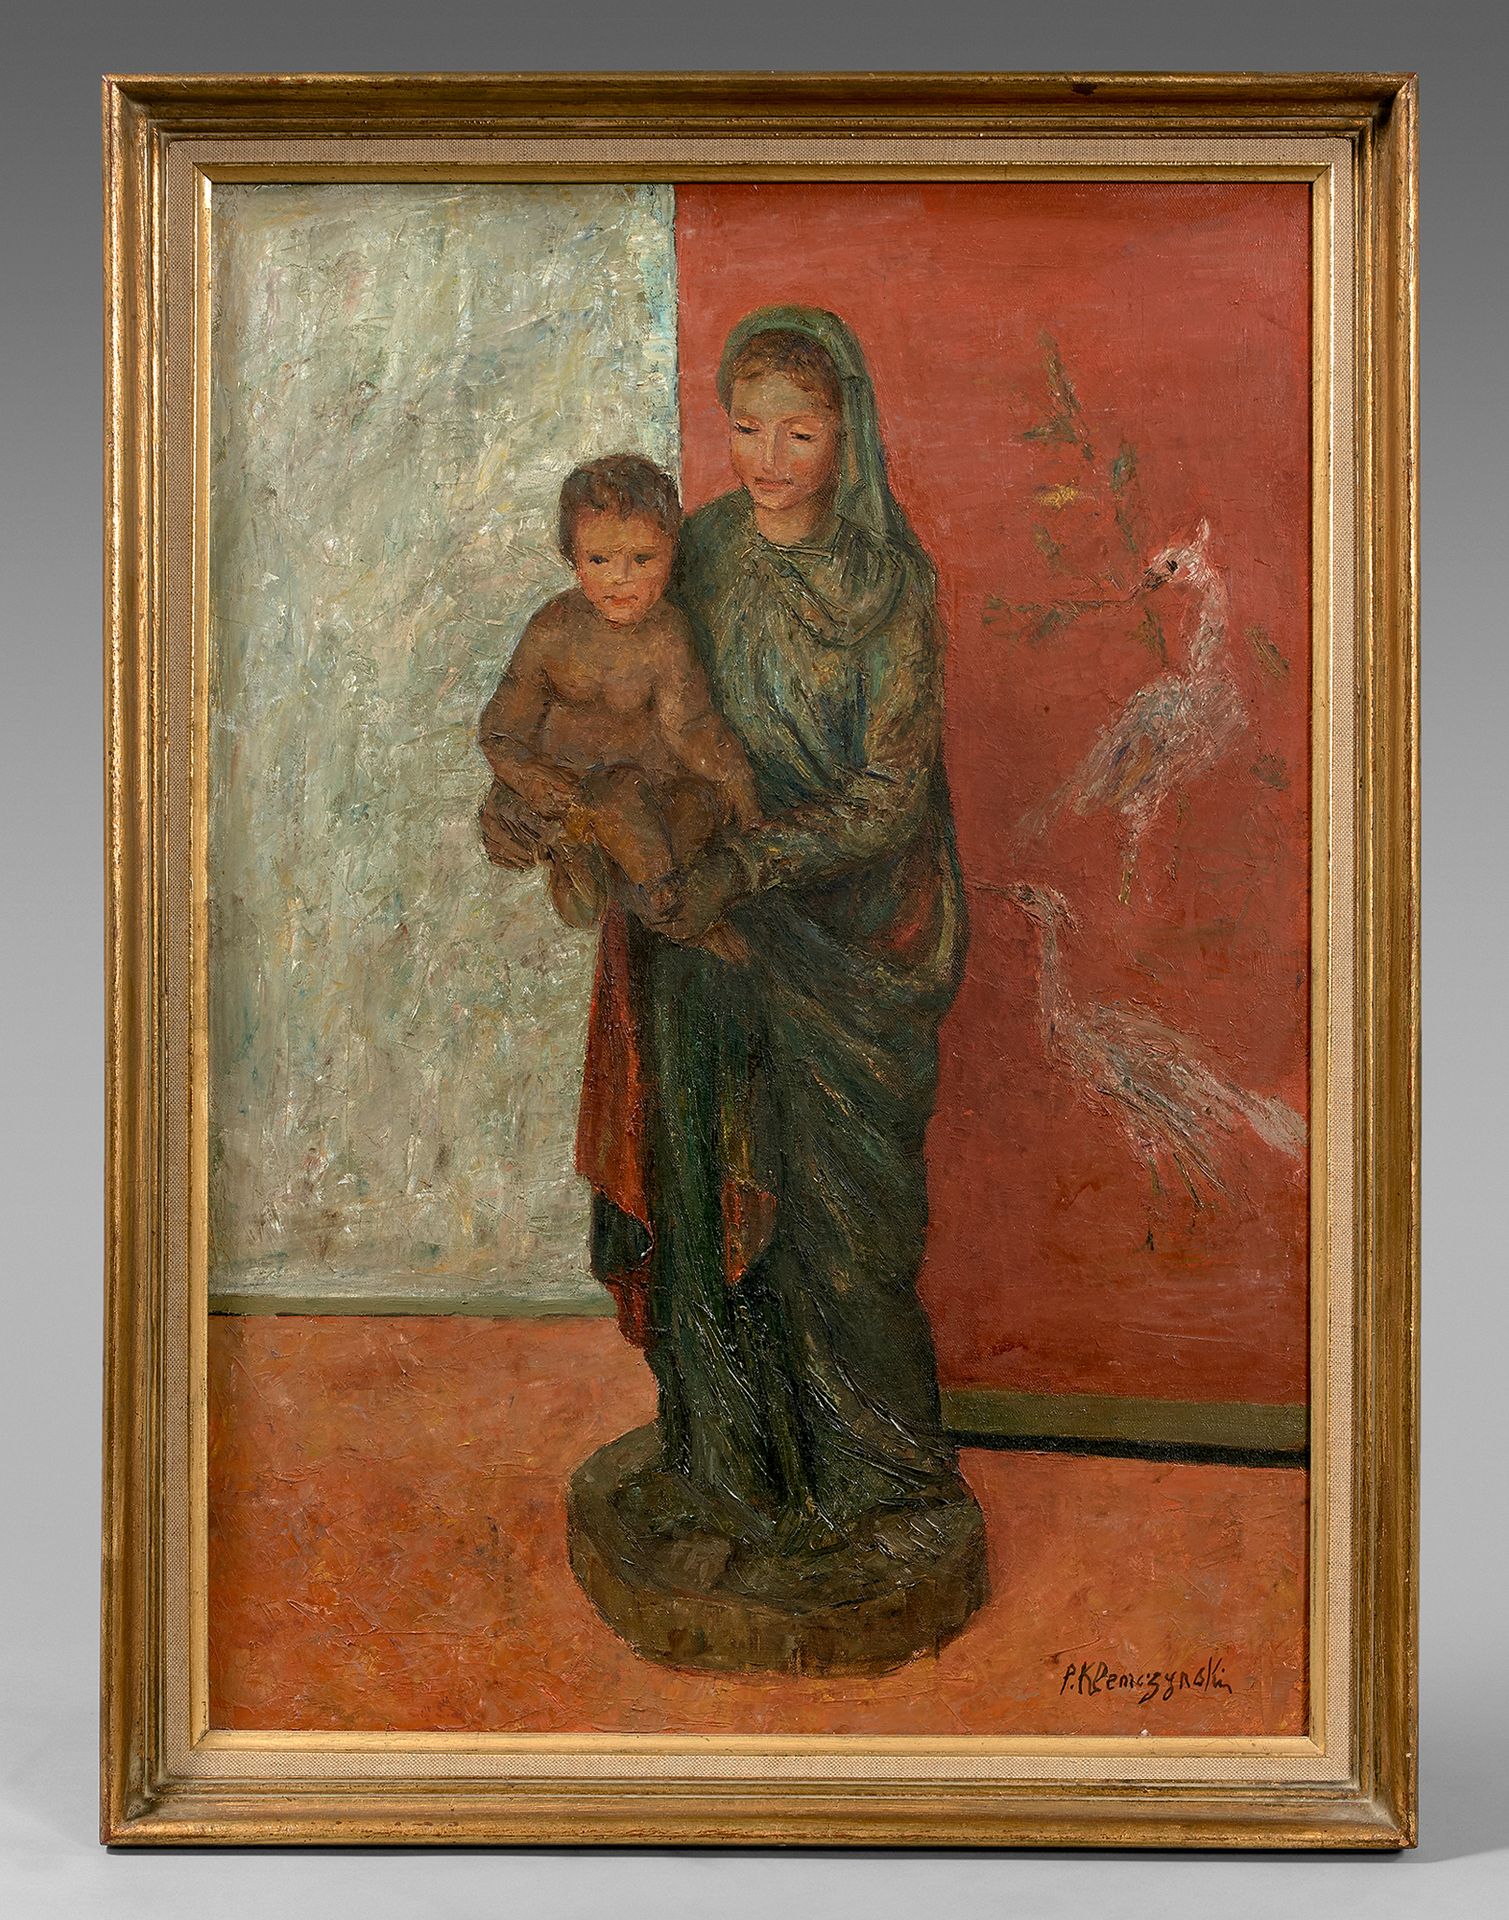 Pierre KLEMCZYNSKI Vergine e Bambino
Olio su tela, firmato in basso a destra.
63&hellip;